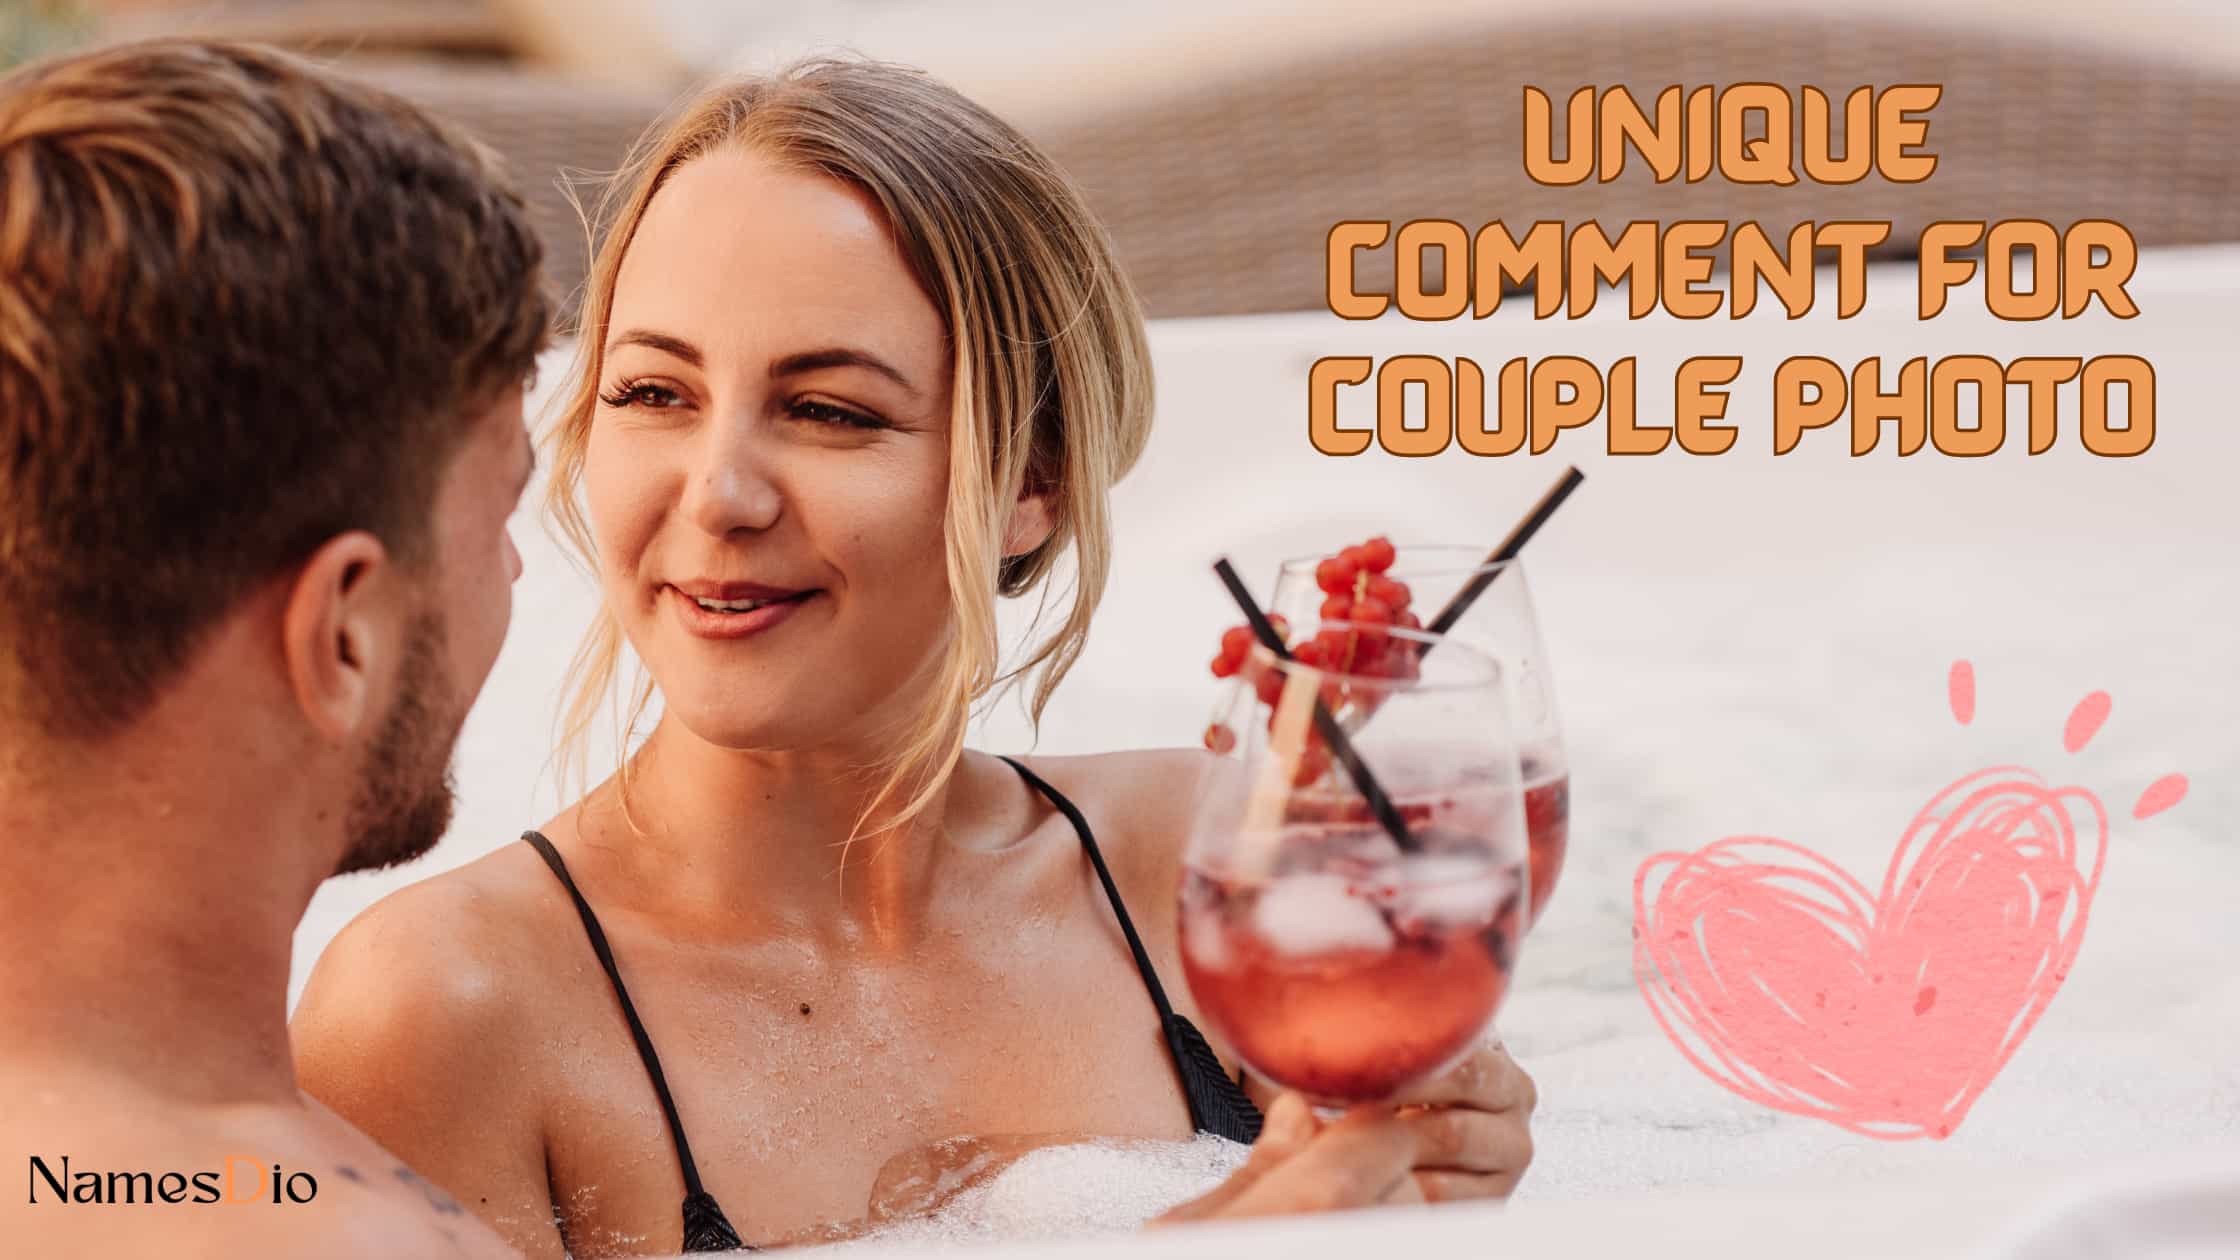 Unique-Comment-for-Couple-Photo